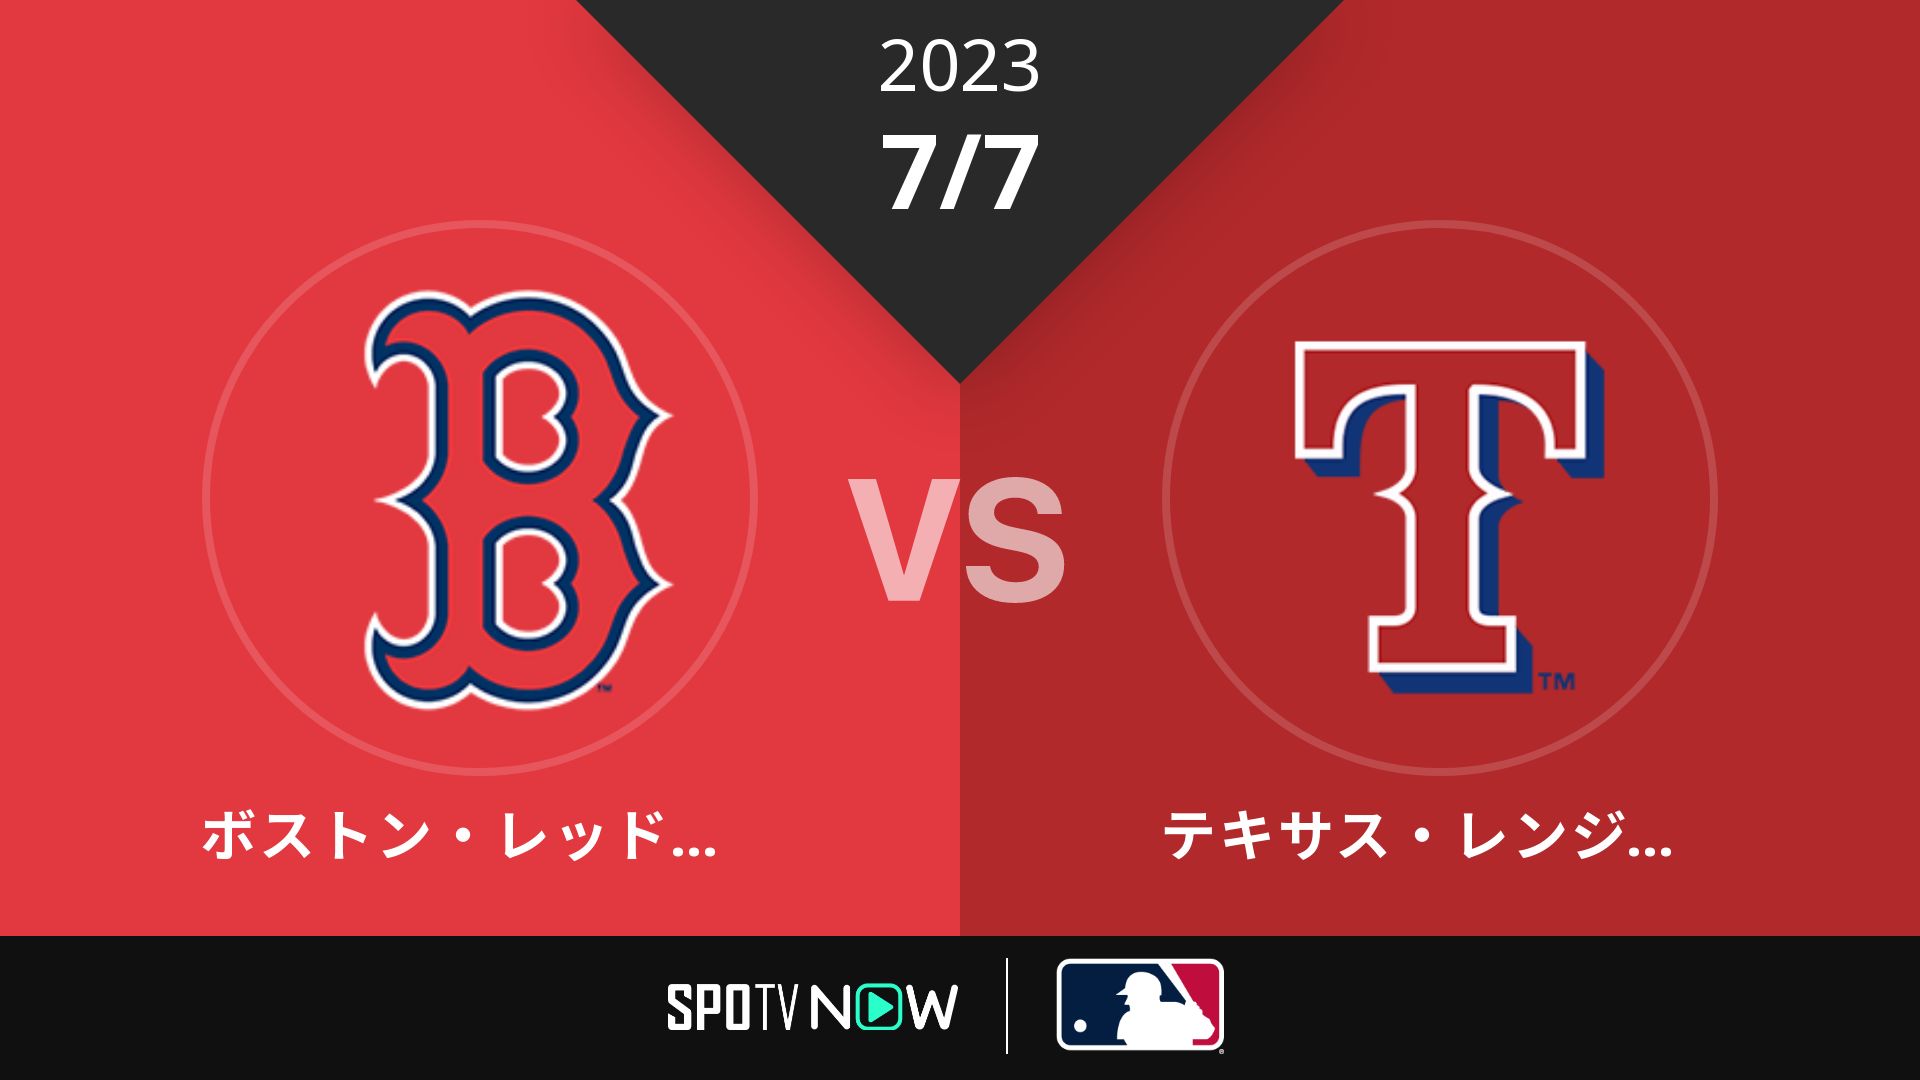 2023/7/7 Rソックス vs レンジャーズ [MLB]